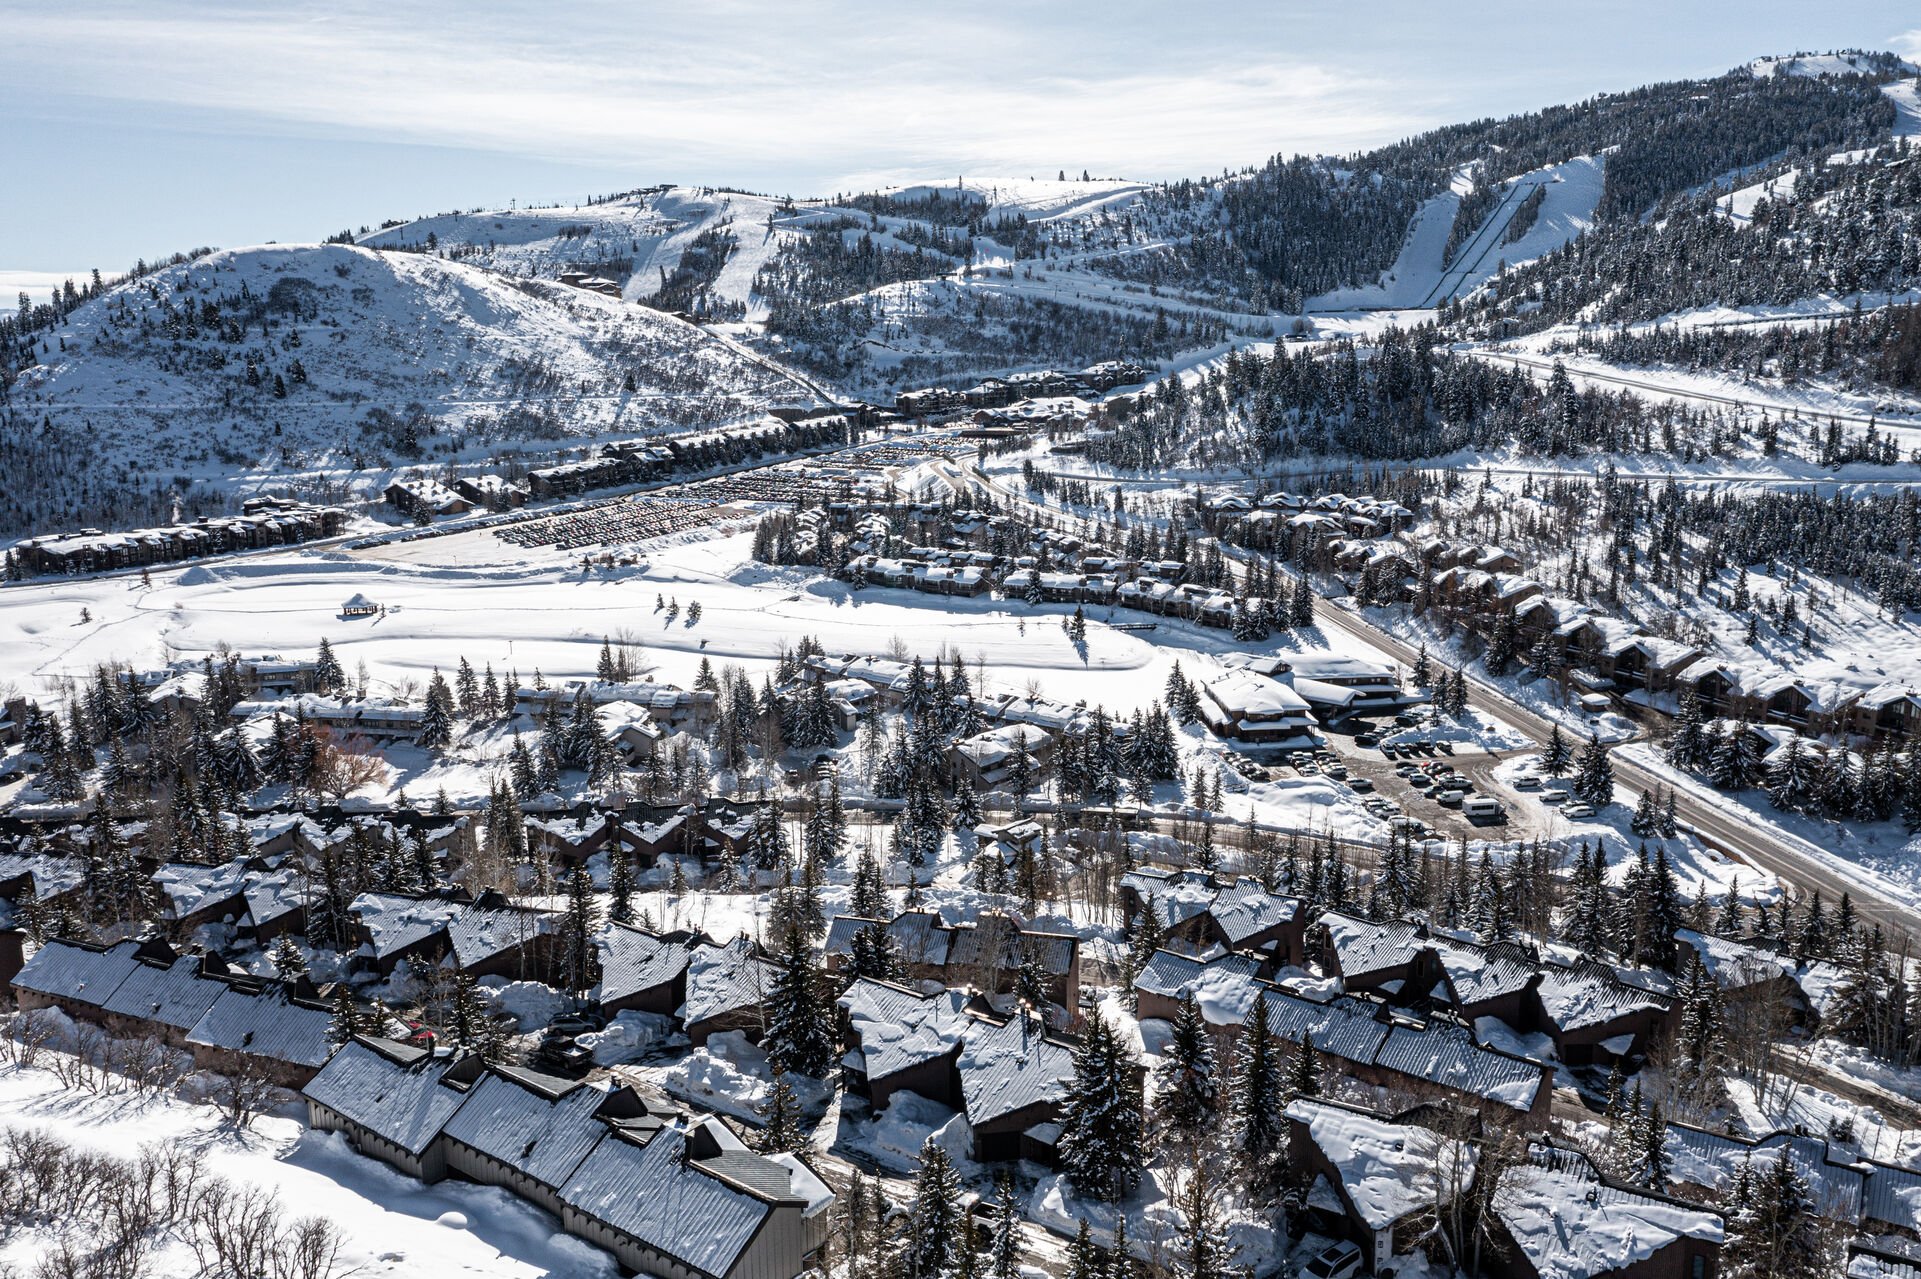 Beautiful views of the Deer Valley Ski Resort